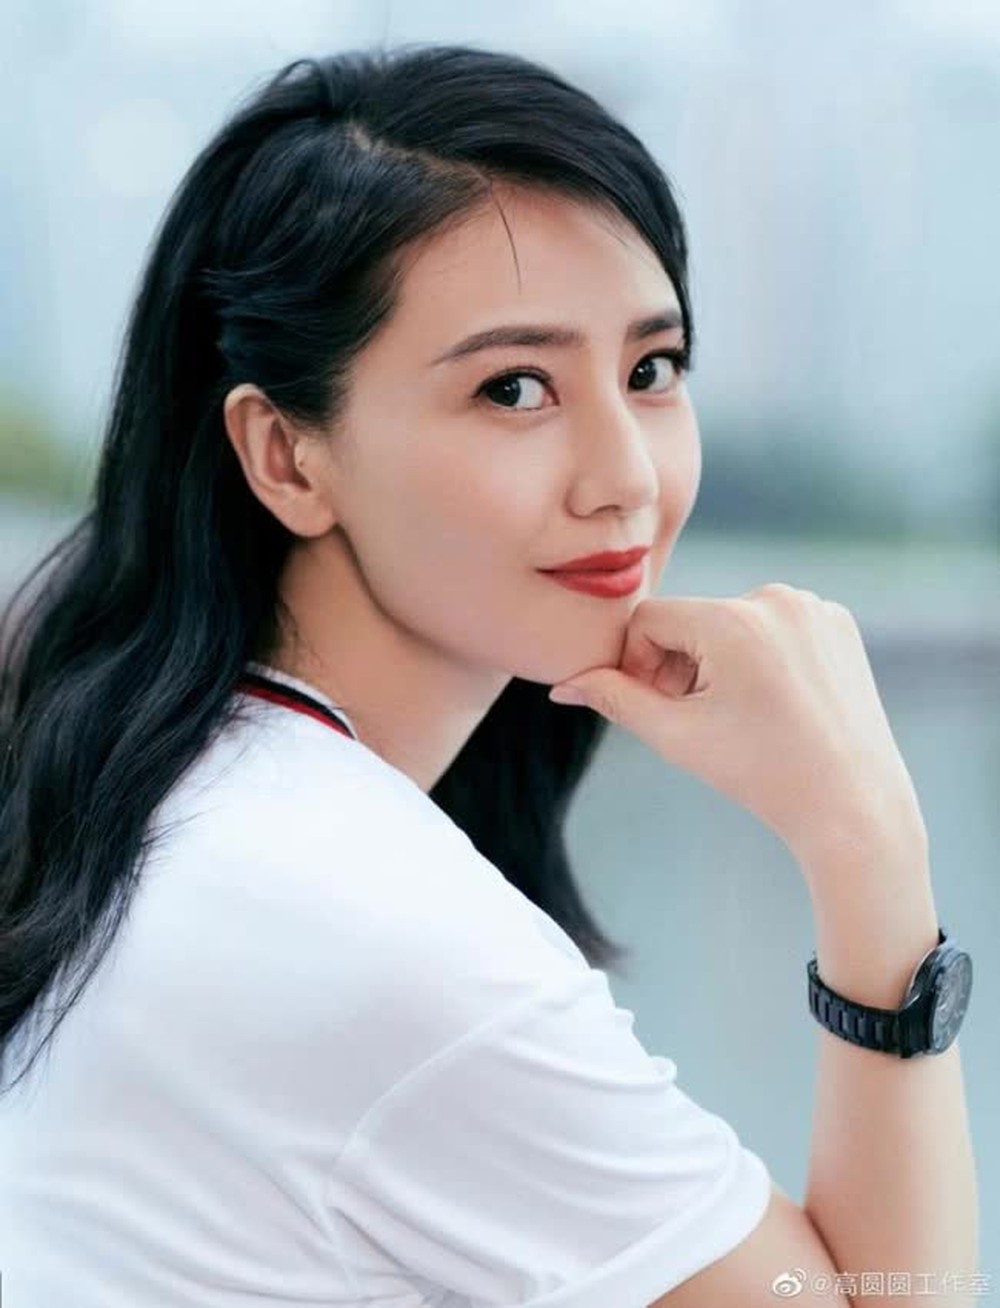 Tranh cãi BXH 10 mỹ nhân showbiz đẹp nhất Trung Quốc: Địch Lệ Nhiệt Ba, Phạm Băng Băng đồng loạt vắng mặt - Ảnh 2.